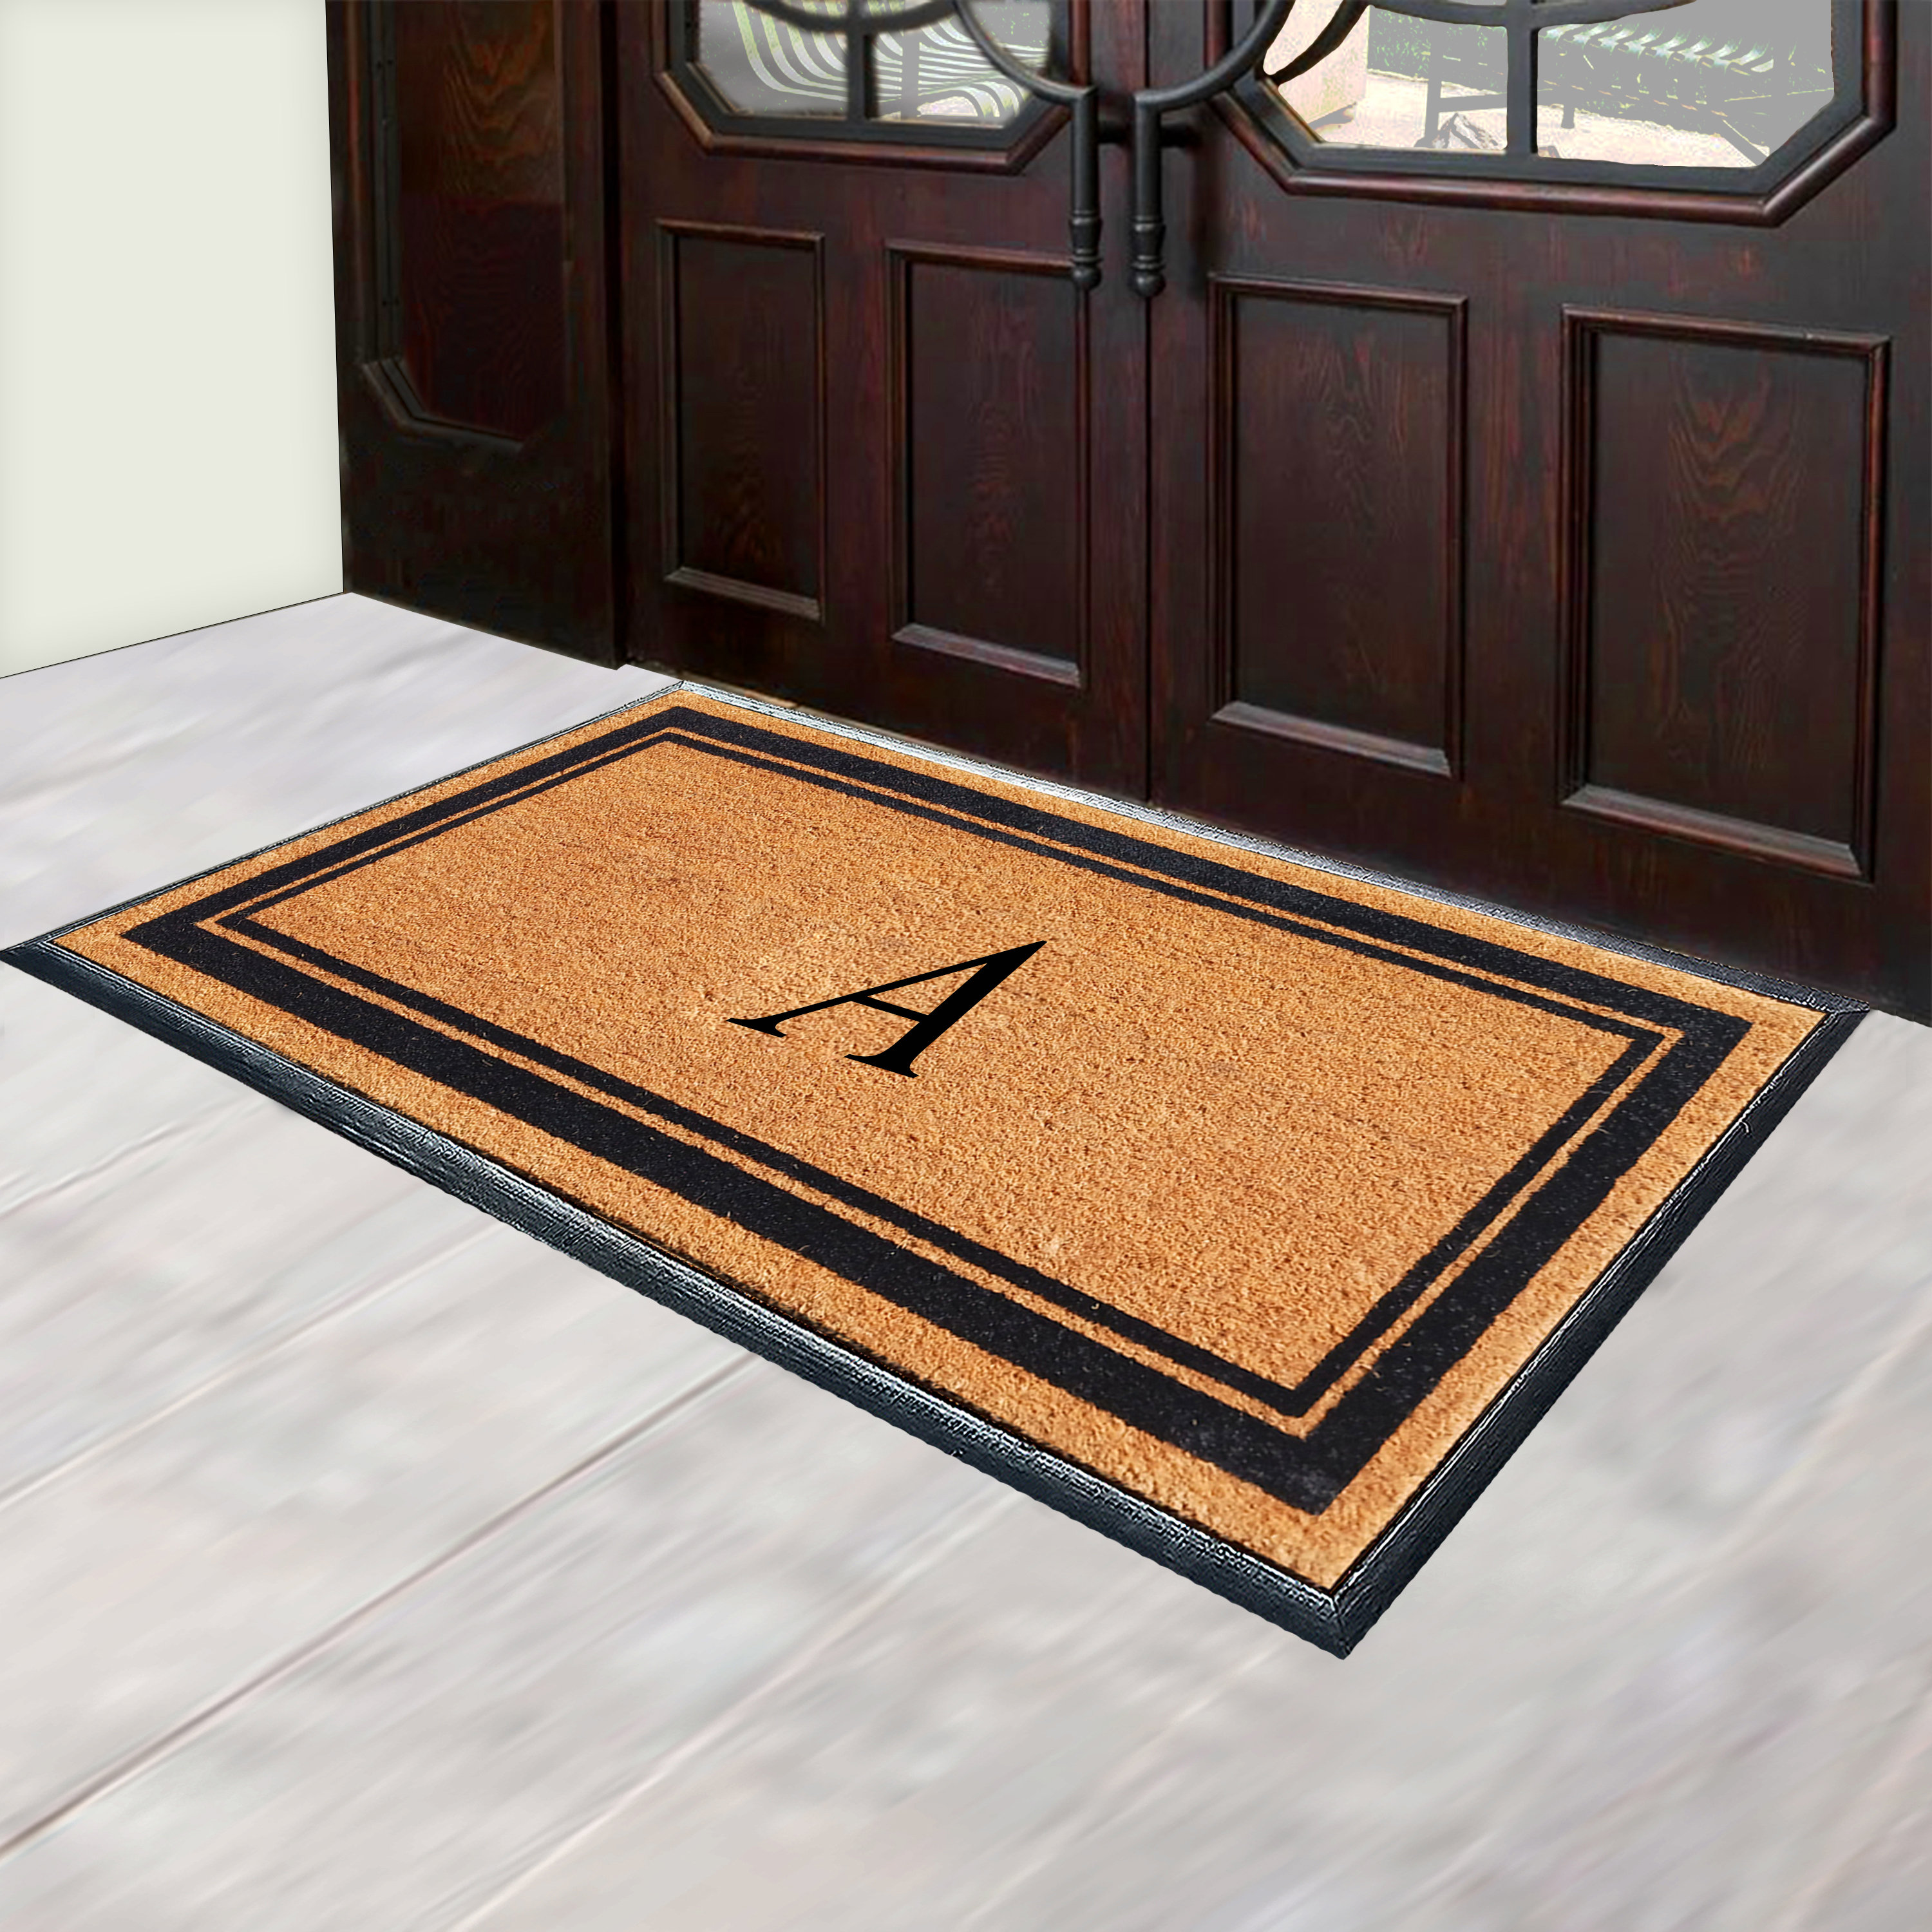 Home Doormat, Leaf Boarder, Welcome Doormat, Double Door Doormat, Home  decor, Large Doormat, Extra large doormat, Custom doormat 